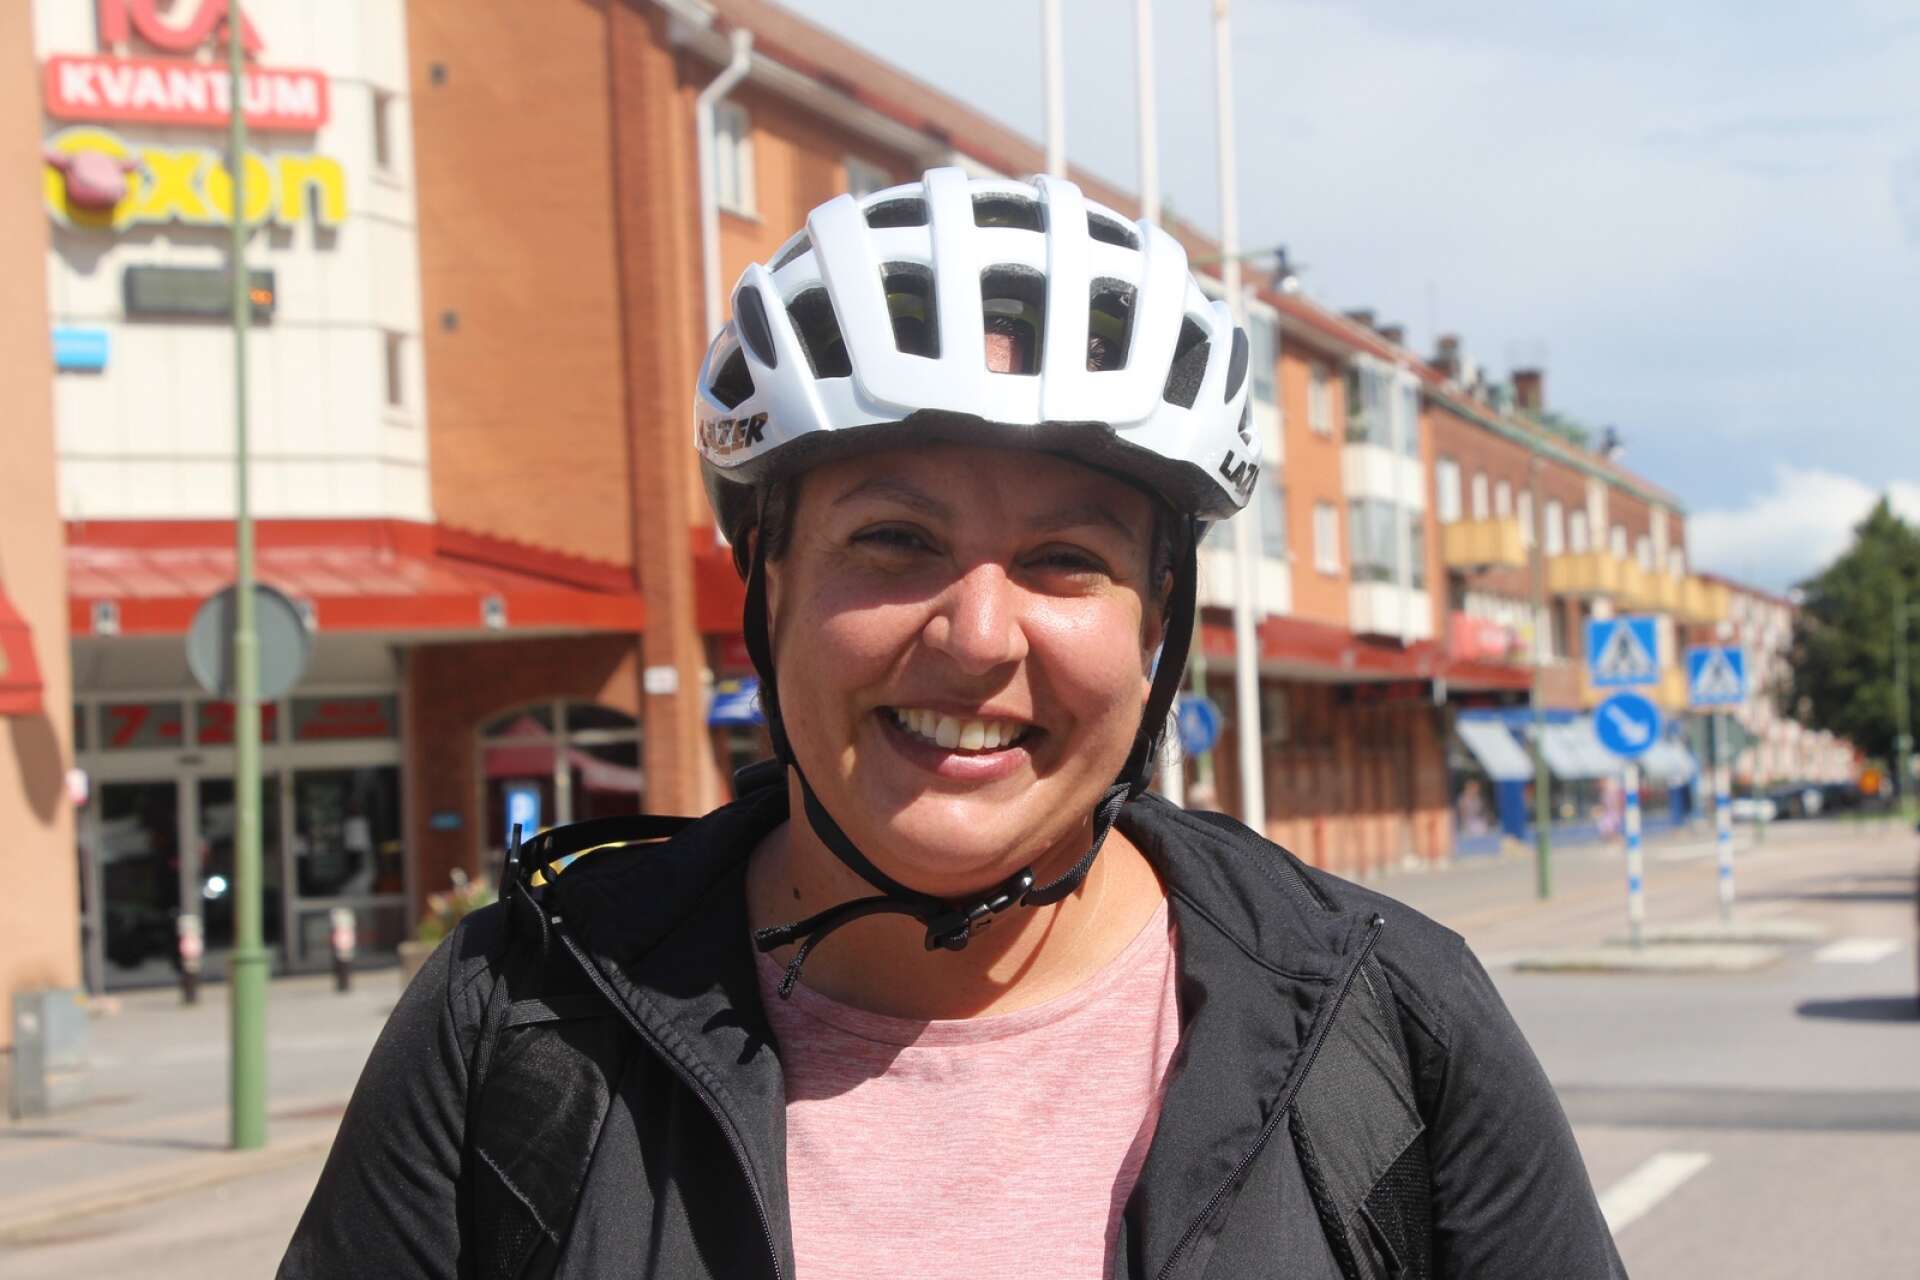 Erika Lindén, 37, Stockholm